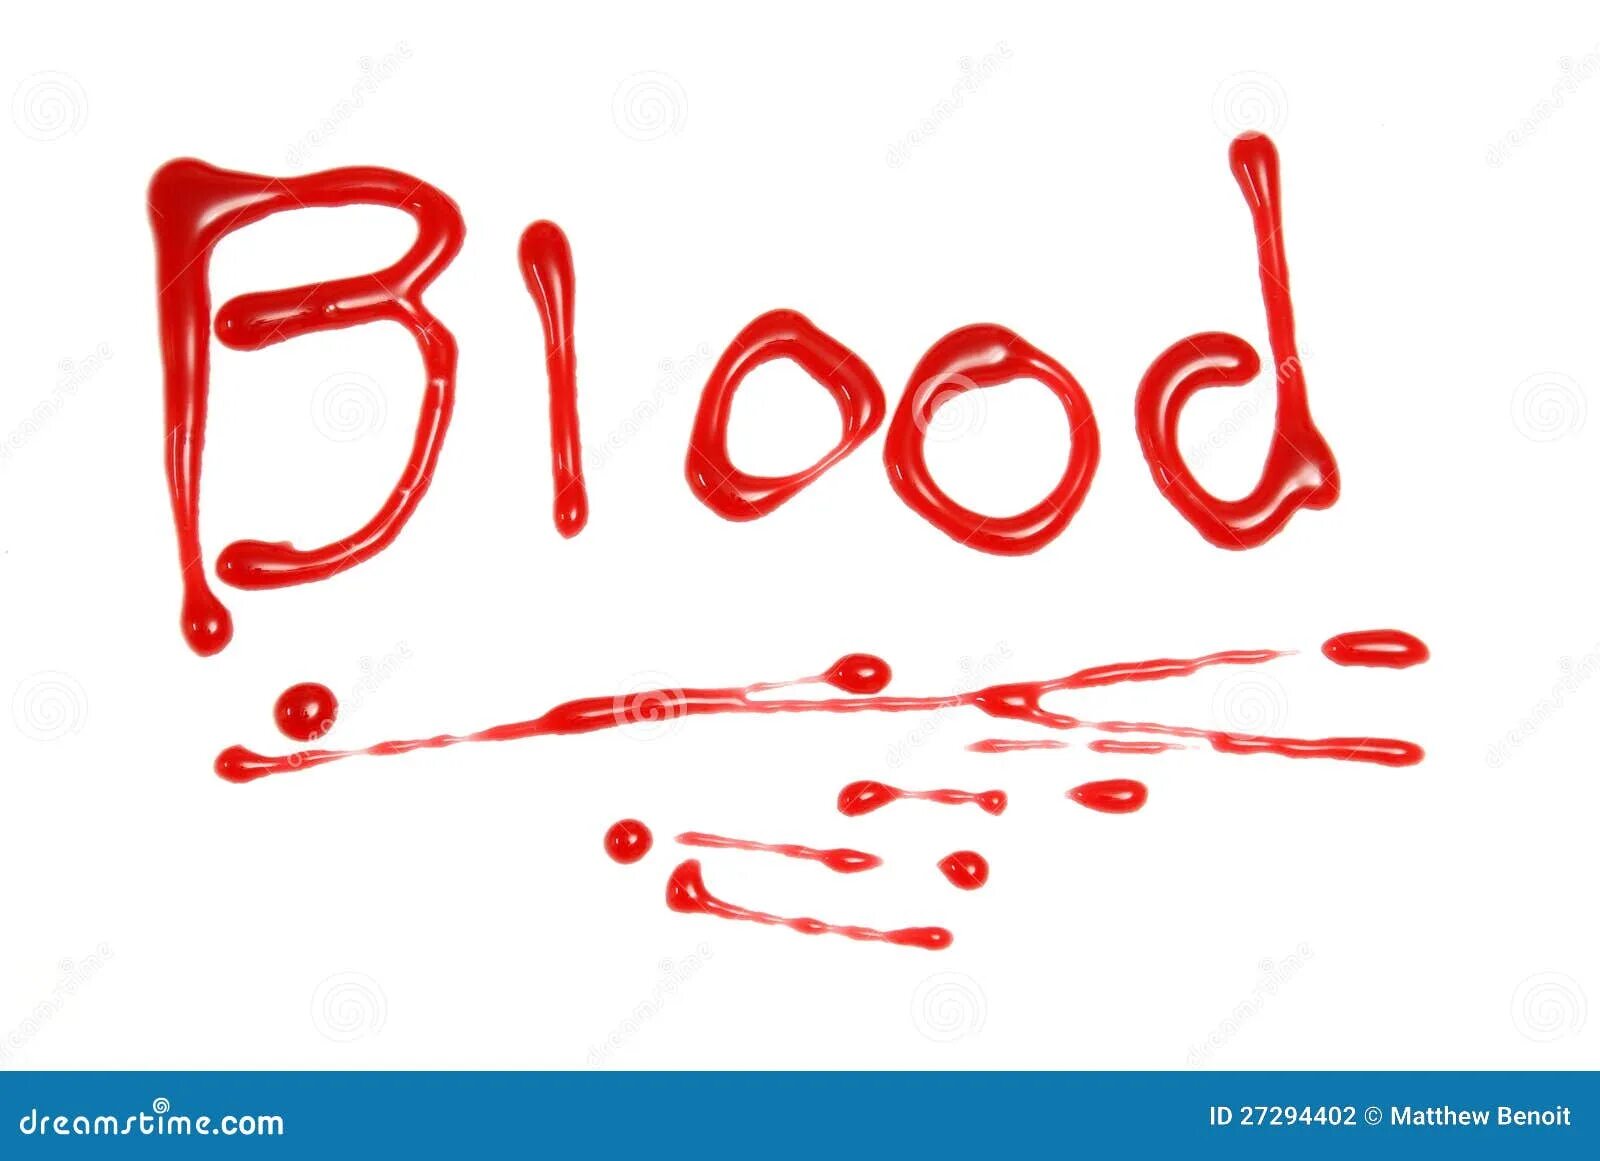 Как по английски кровь. Надписи написанные кровью.